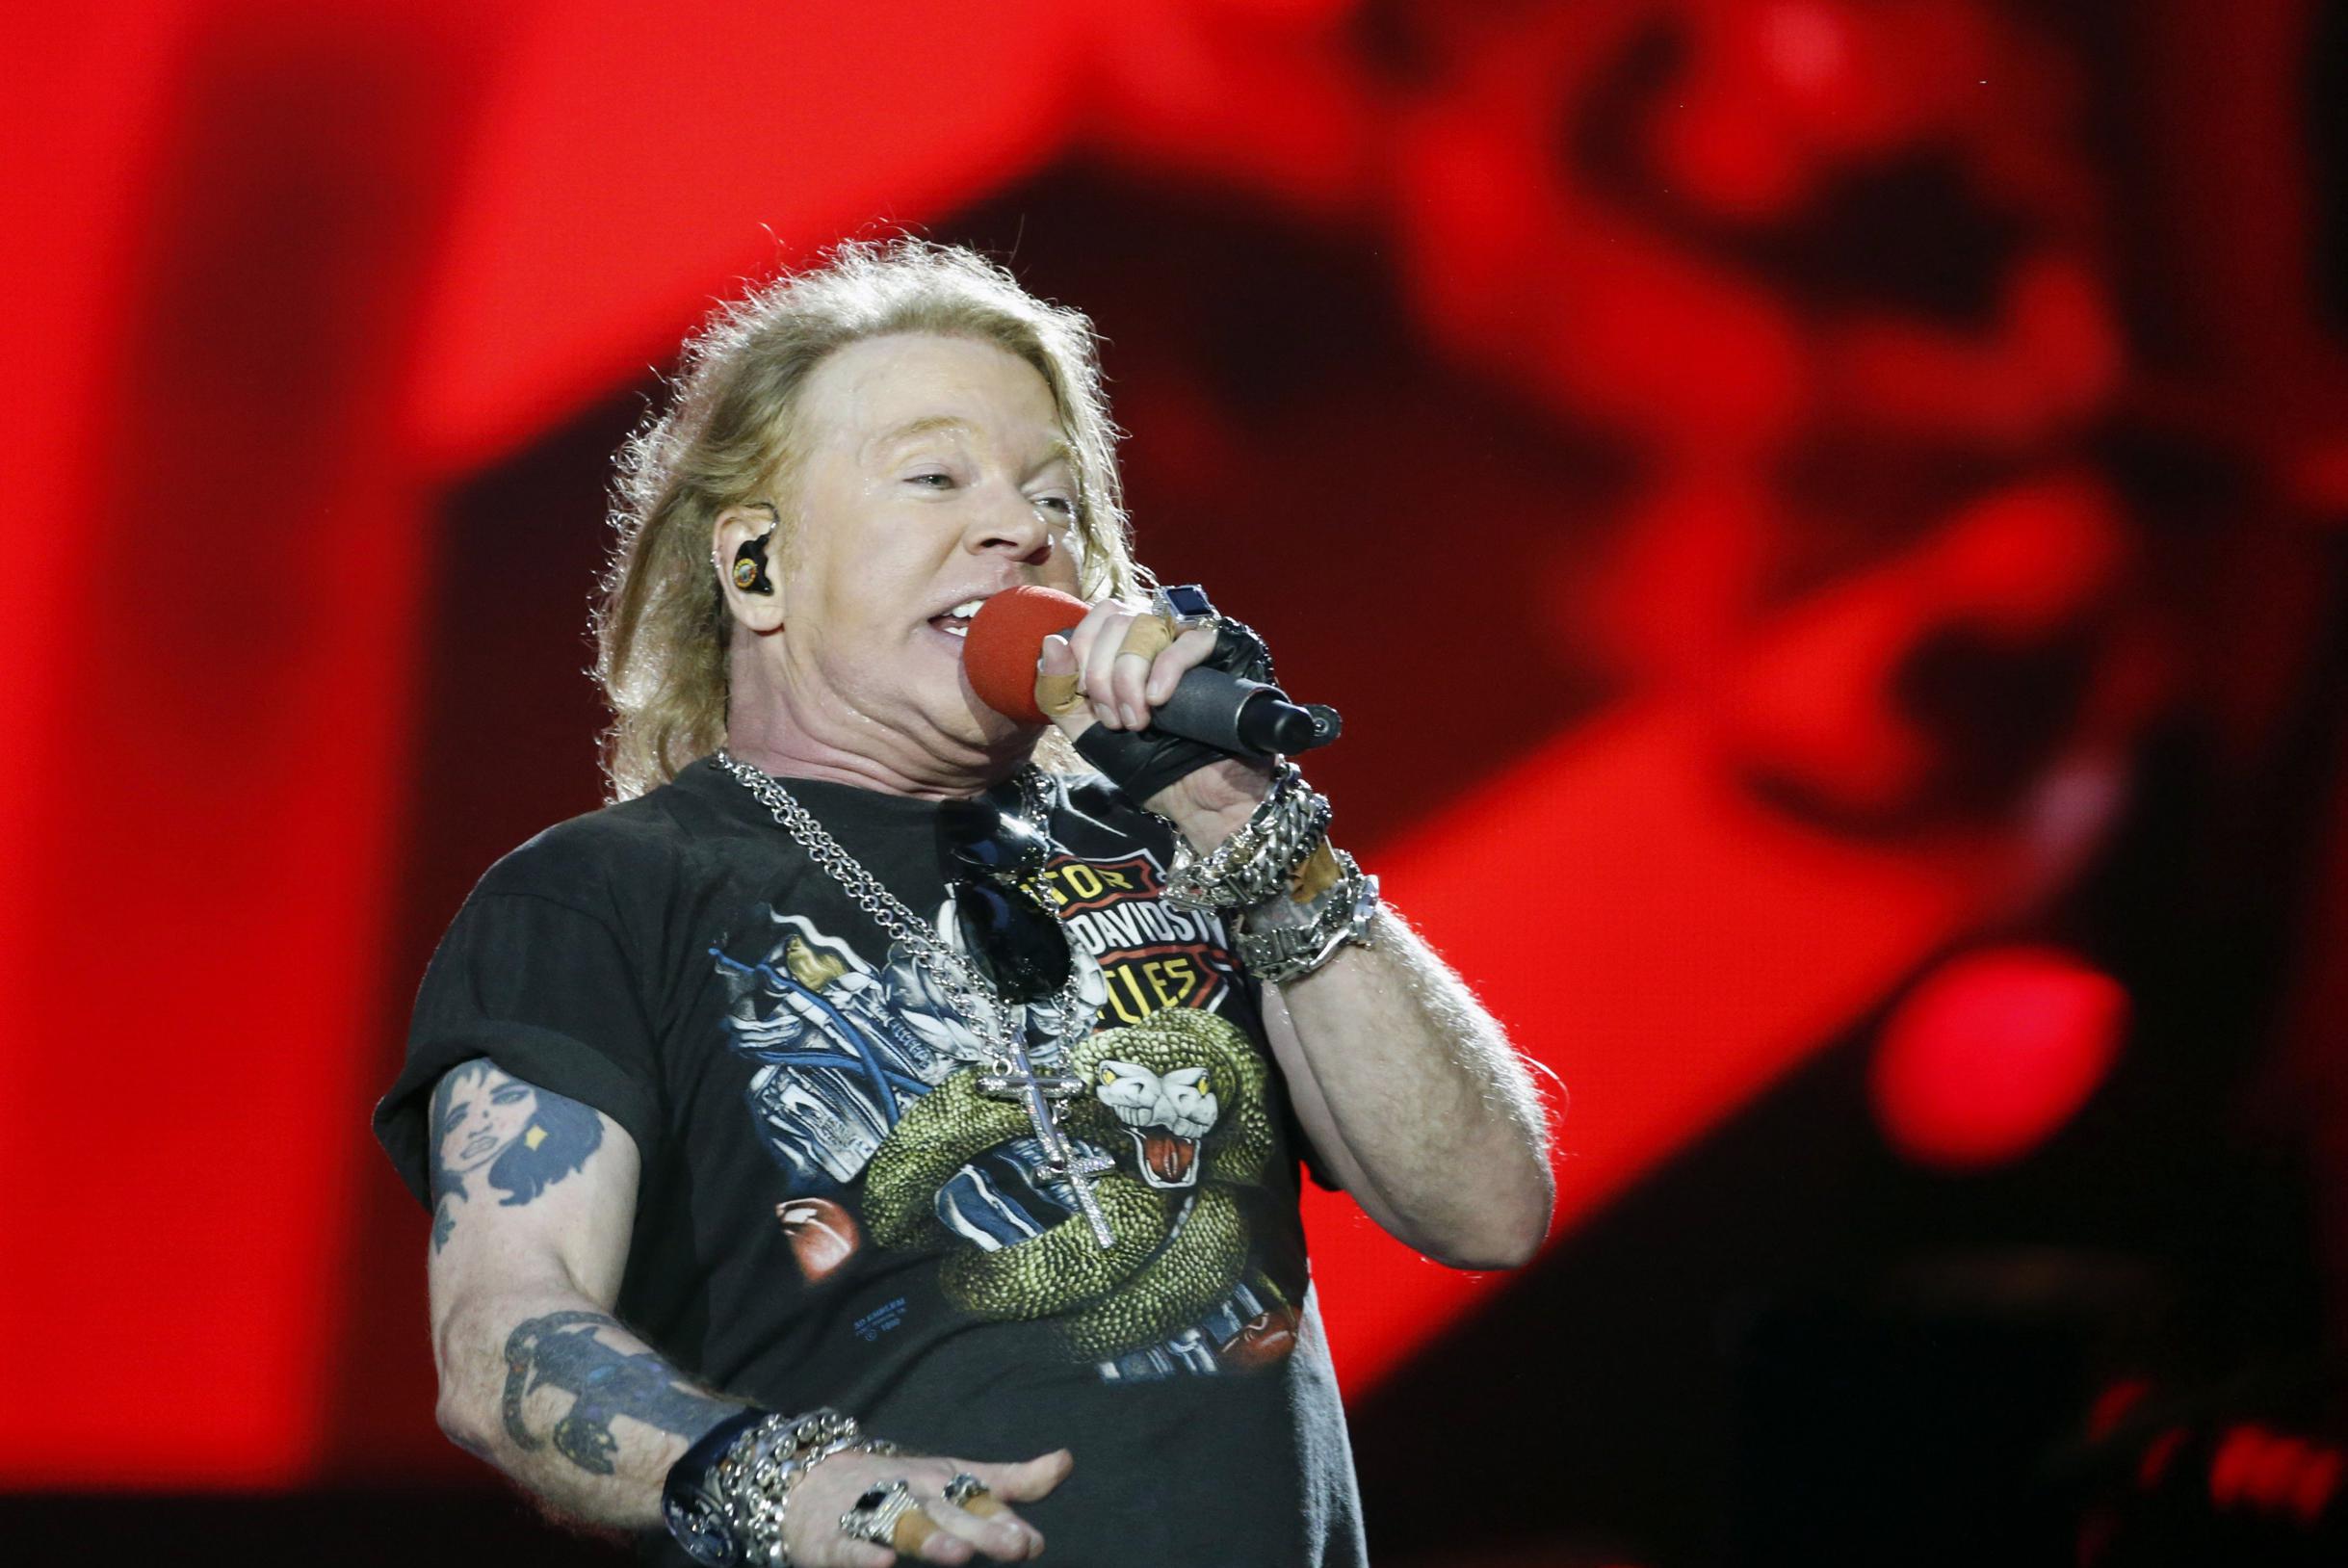 Фанат Guns N’ Roses подносит микрофон к ее лицу, вокалист Эксл Роуз отвечает: «Мы занимаемся этим уже 30 лет, но сейчас мы собираемся остановиться».